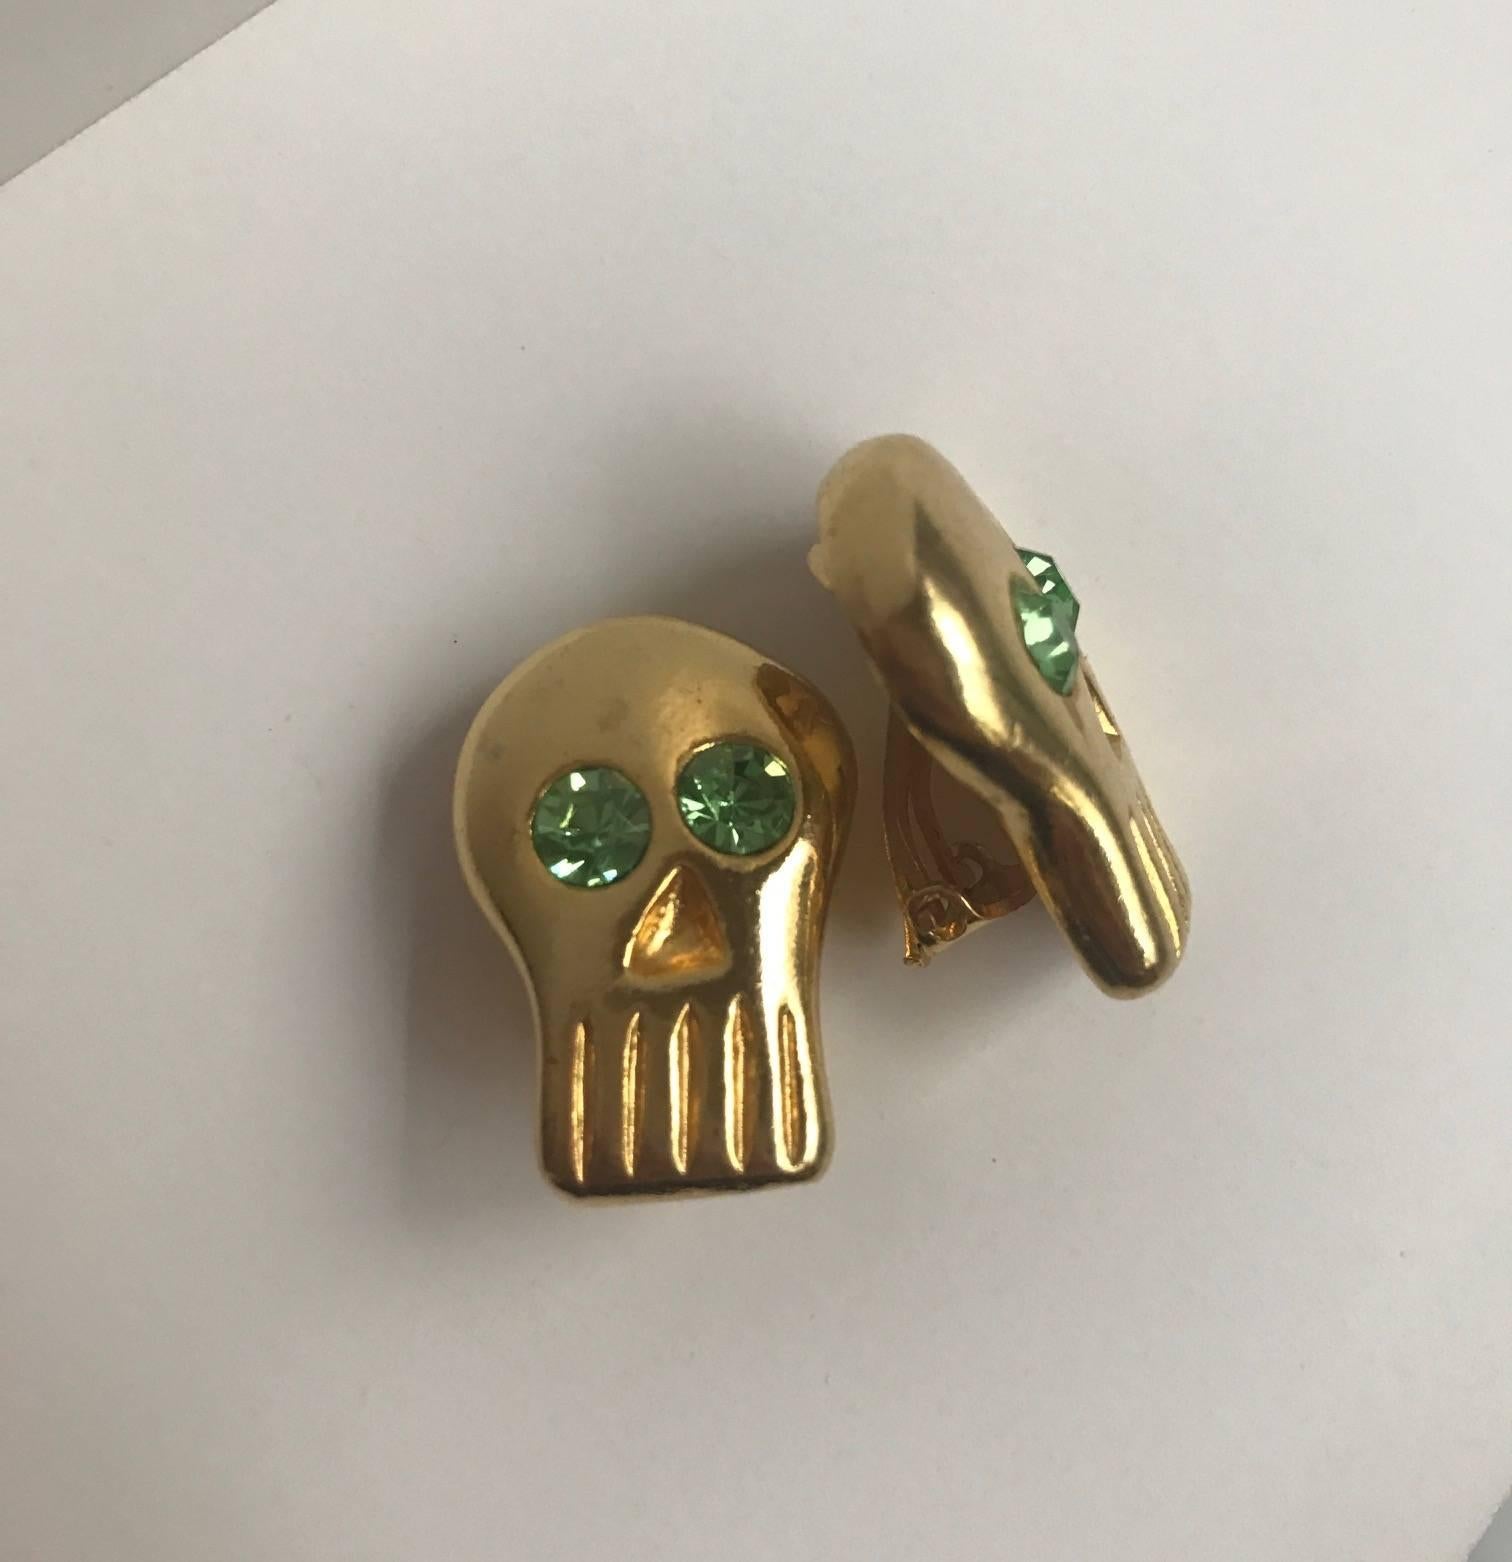 BillyBoy* Surreal Bijoux 1989 goldfarbene Totenkopf-Ohrringe mit grünen Kristallaugen. Jedes Stück von BillyBoy*s Modeschmuck wurde individuell angefertigt, und diese sind ein wunderbares Beispiel für seine kreative Arbeit! 

Ungefähr 1 1/8